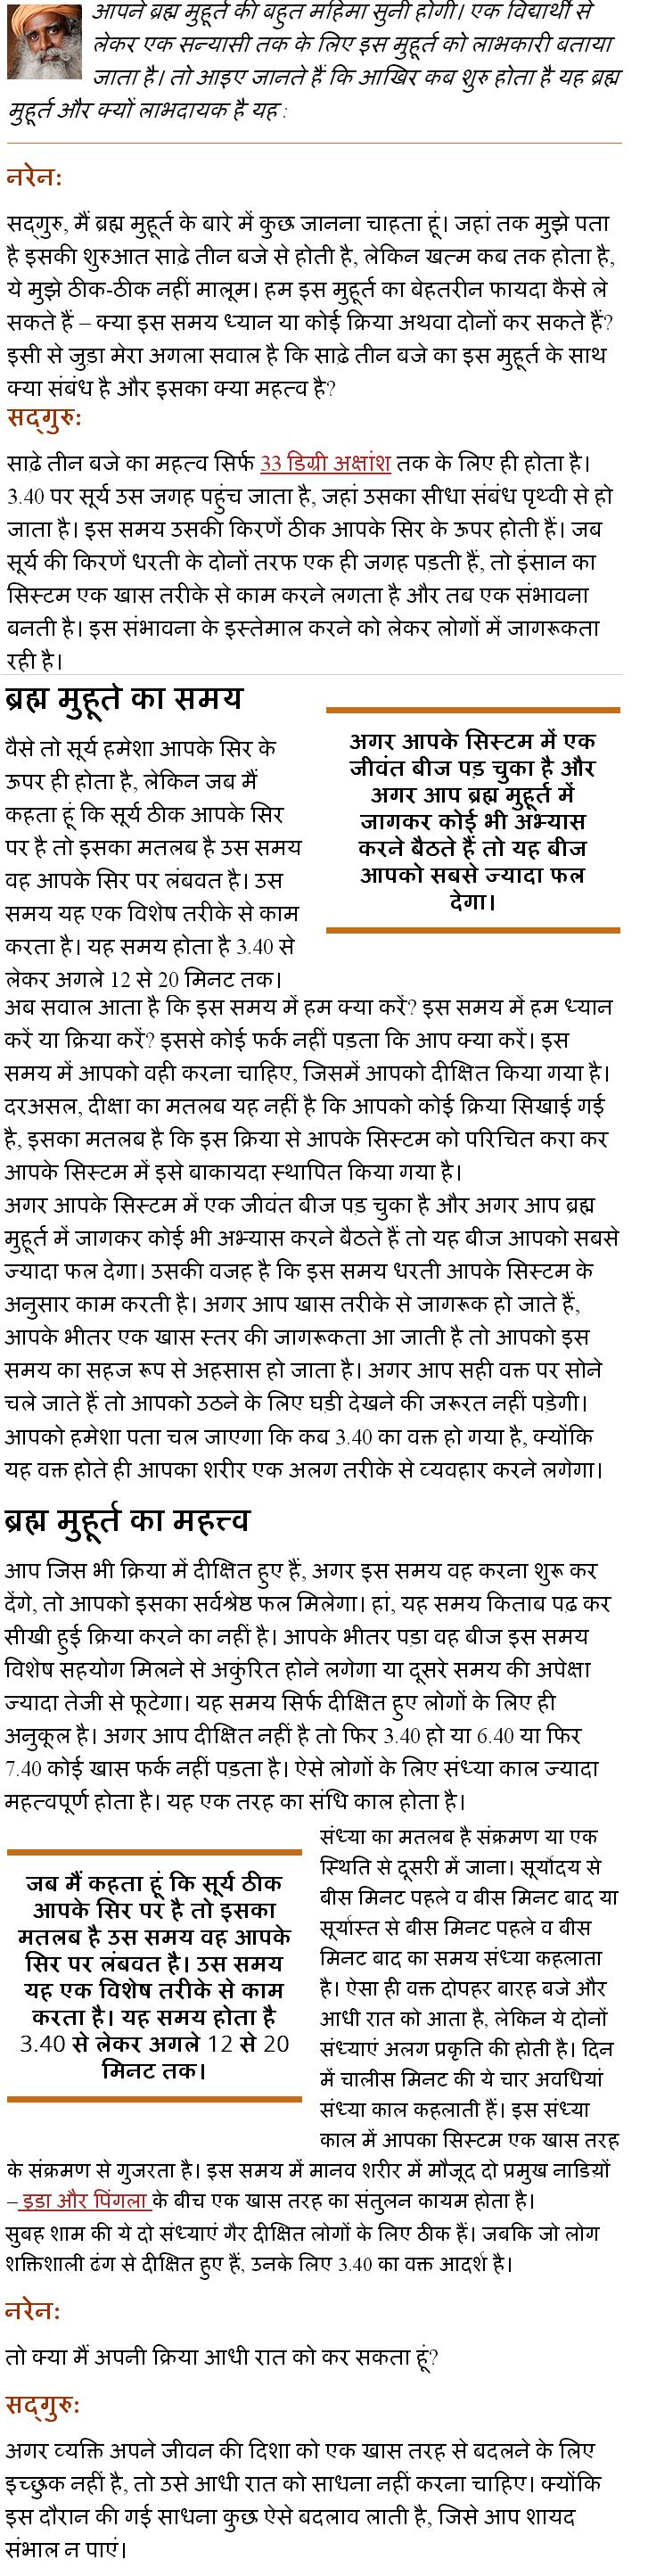 Hindi News JS1MP